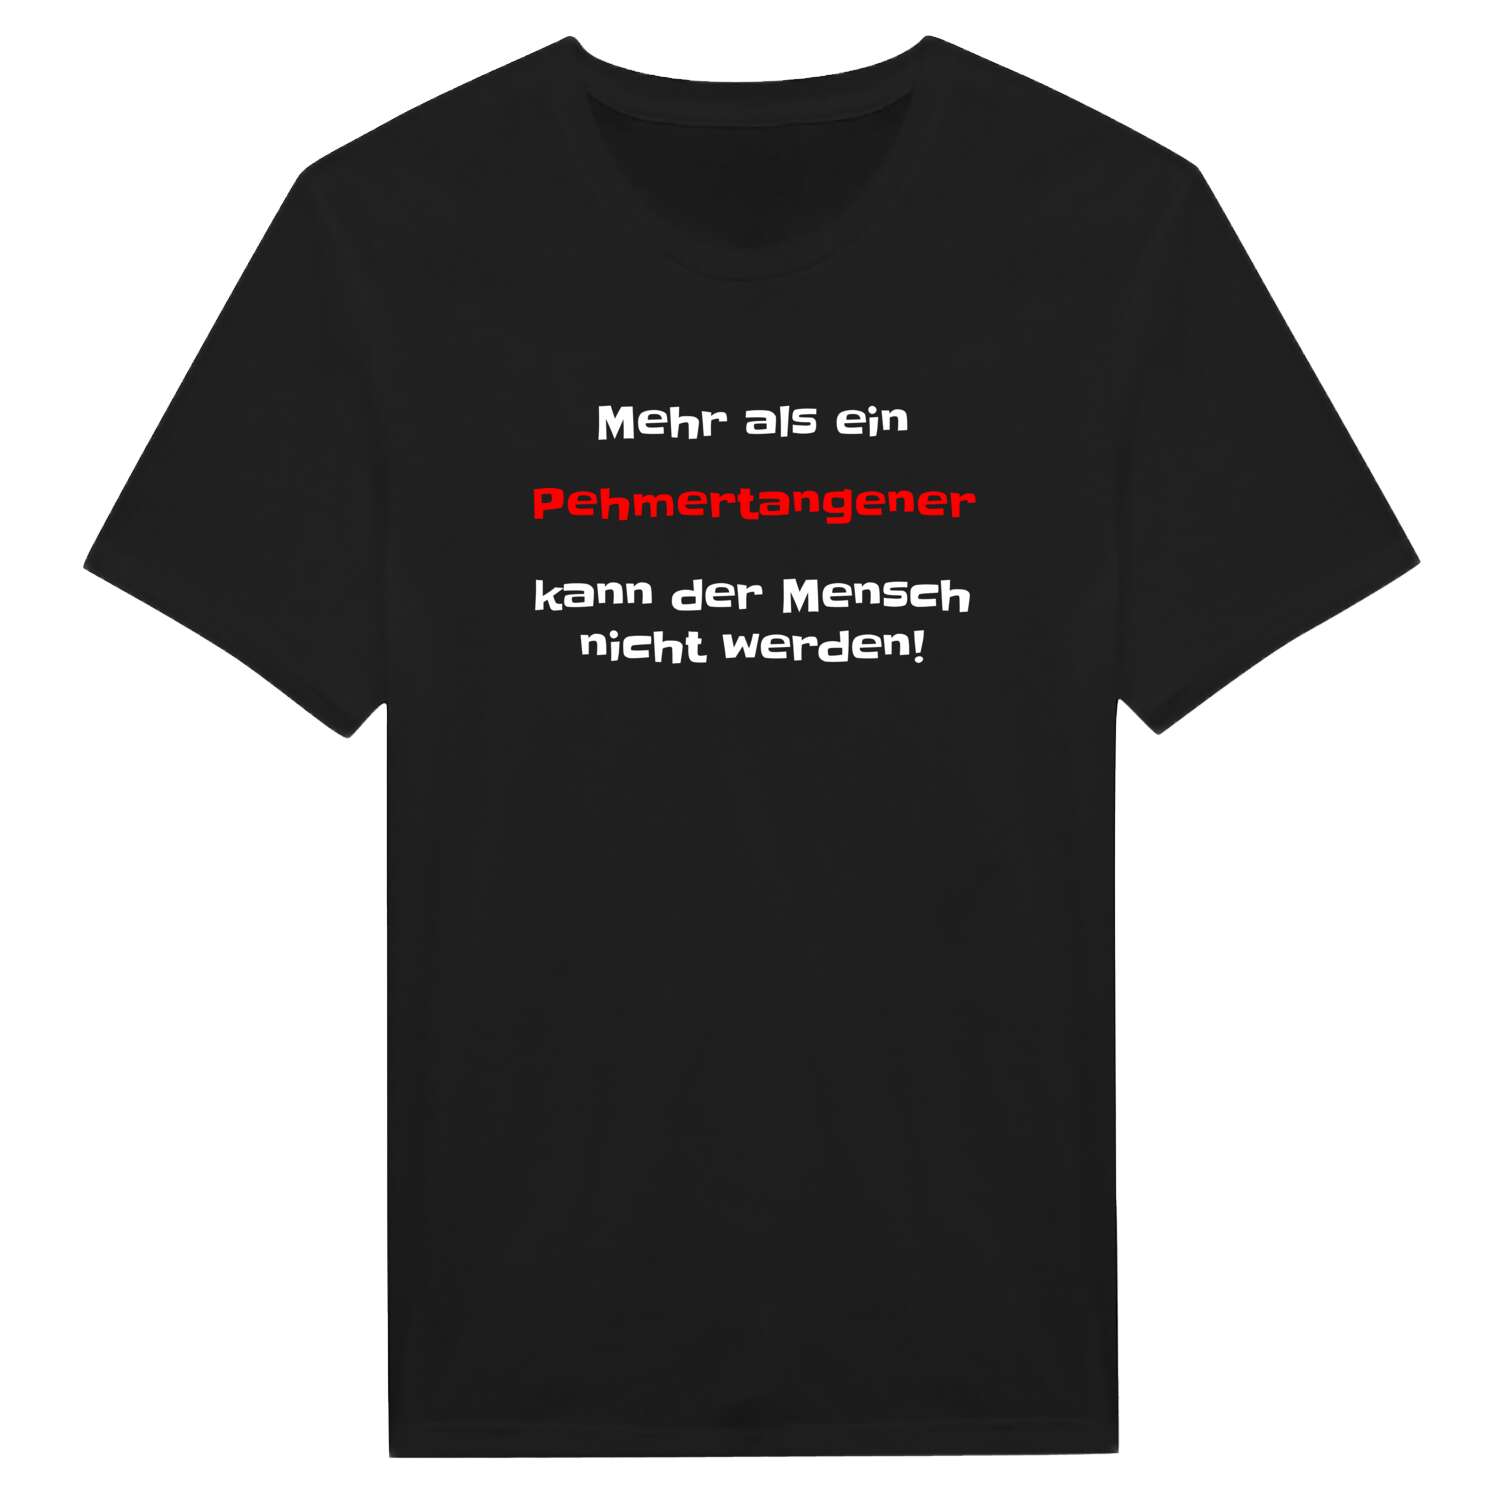 Pehmertange T-Shirt »Mehr als ein«